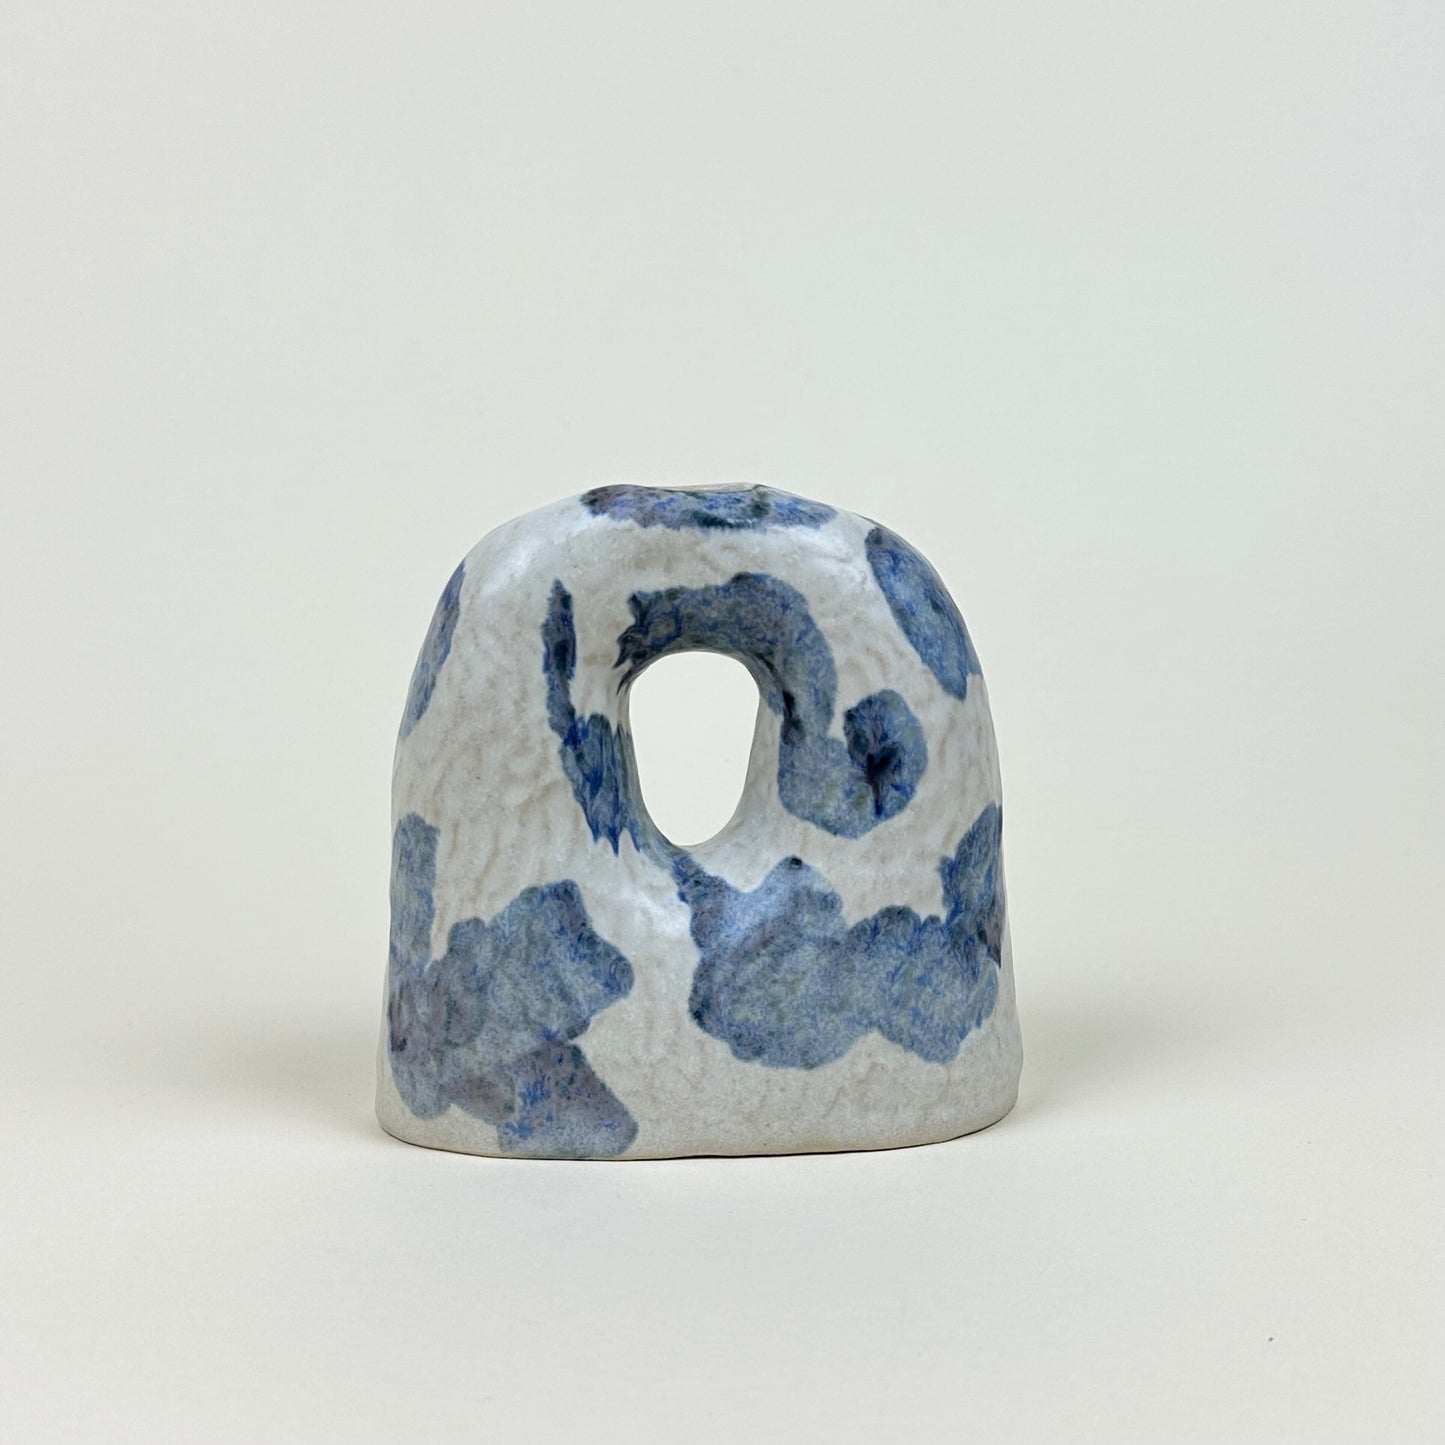 White and blue stoneware candle holder by Malwina Kleparska